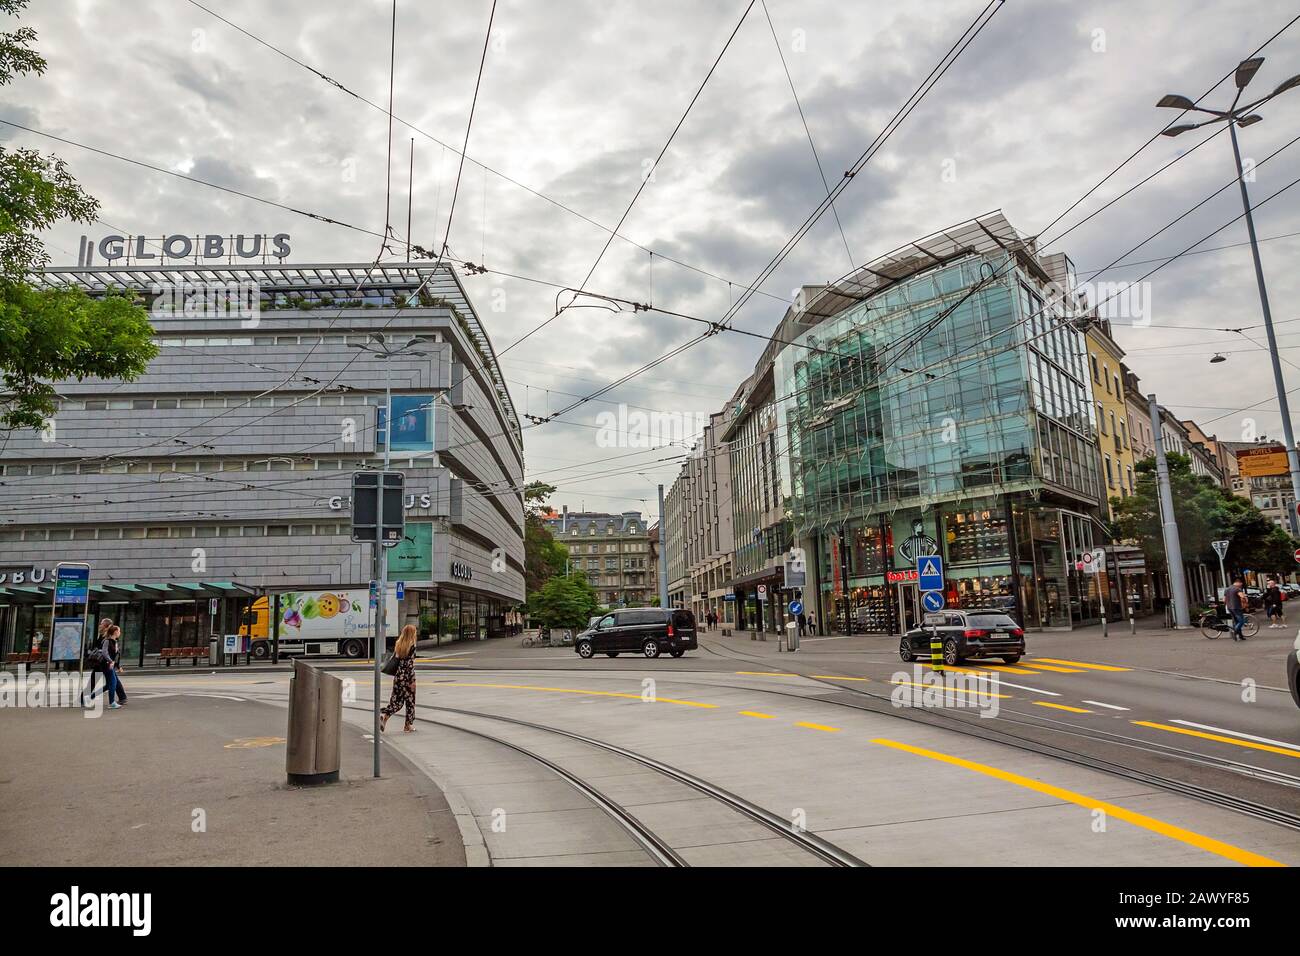 Zurigo, Svizzera - 10 giugno 2017: Città interna di Zurigo con edifici antichi e moderni. Binari del tram di fronte. Foto Stock